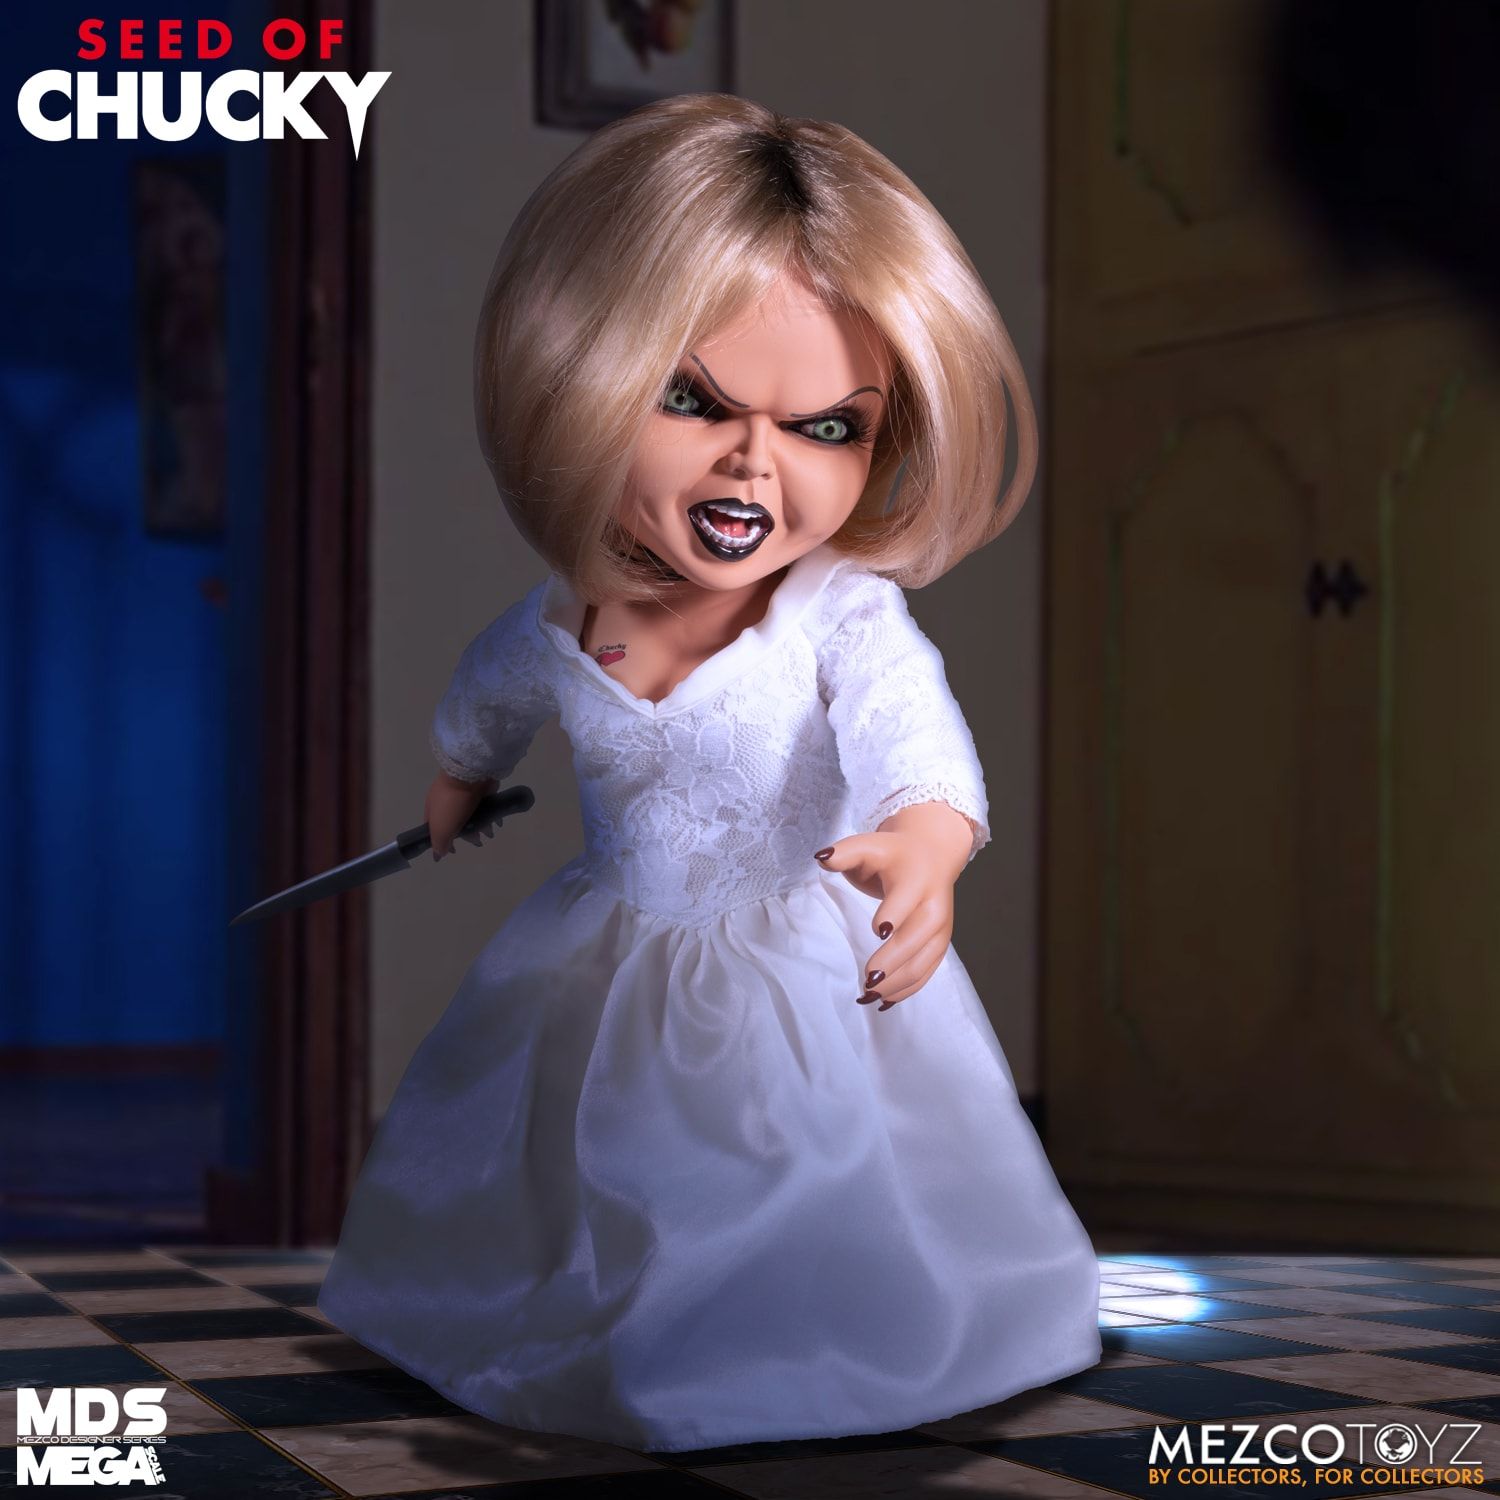 Mezco Toyz Seed of Chucky Tiffany Action Figure